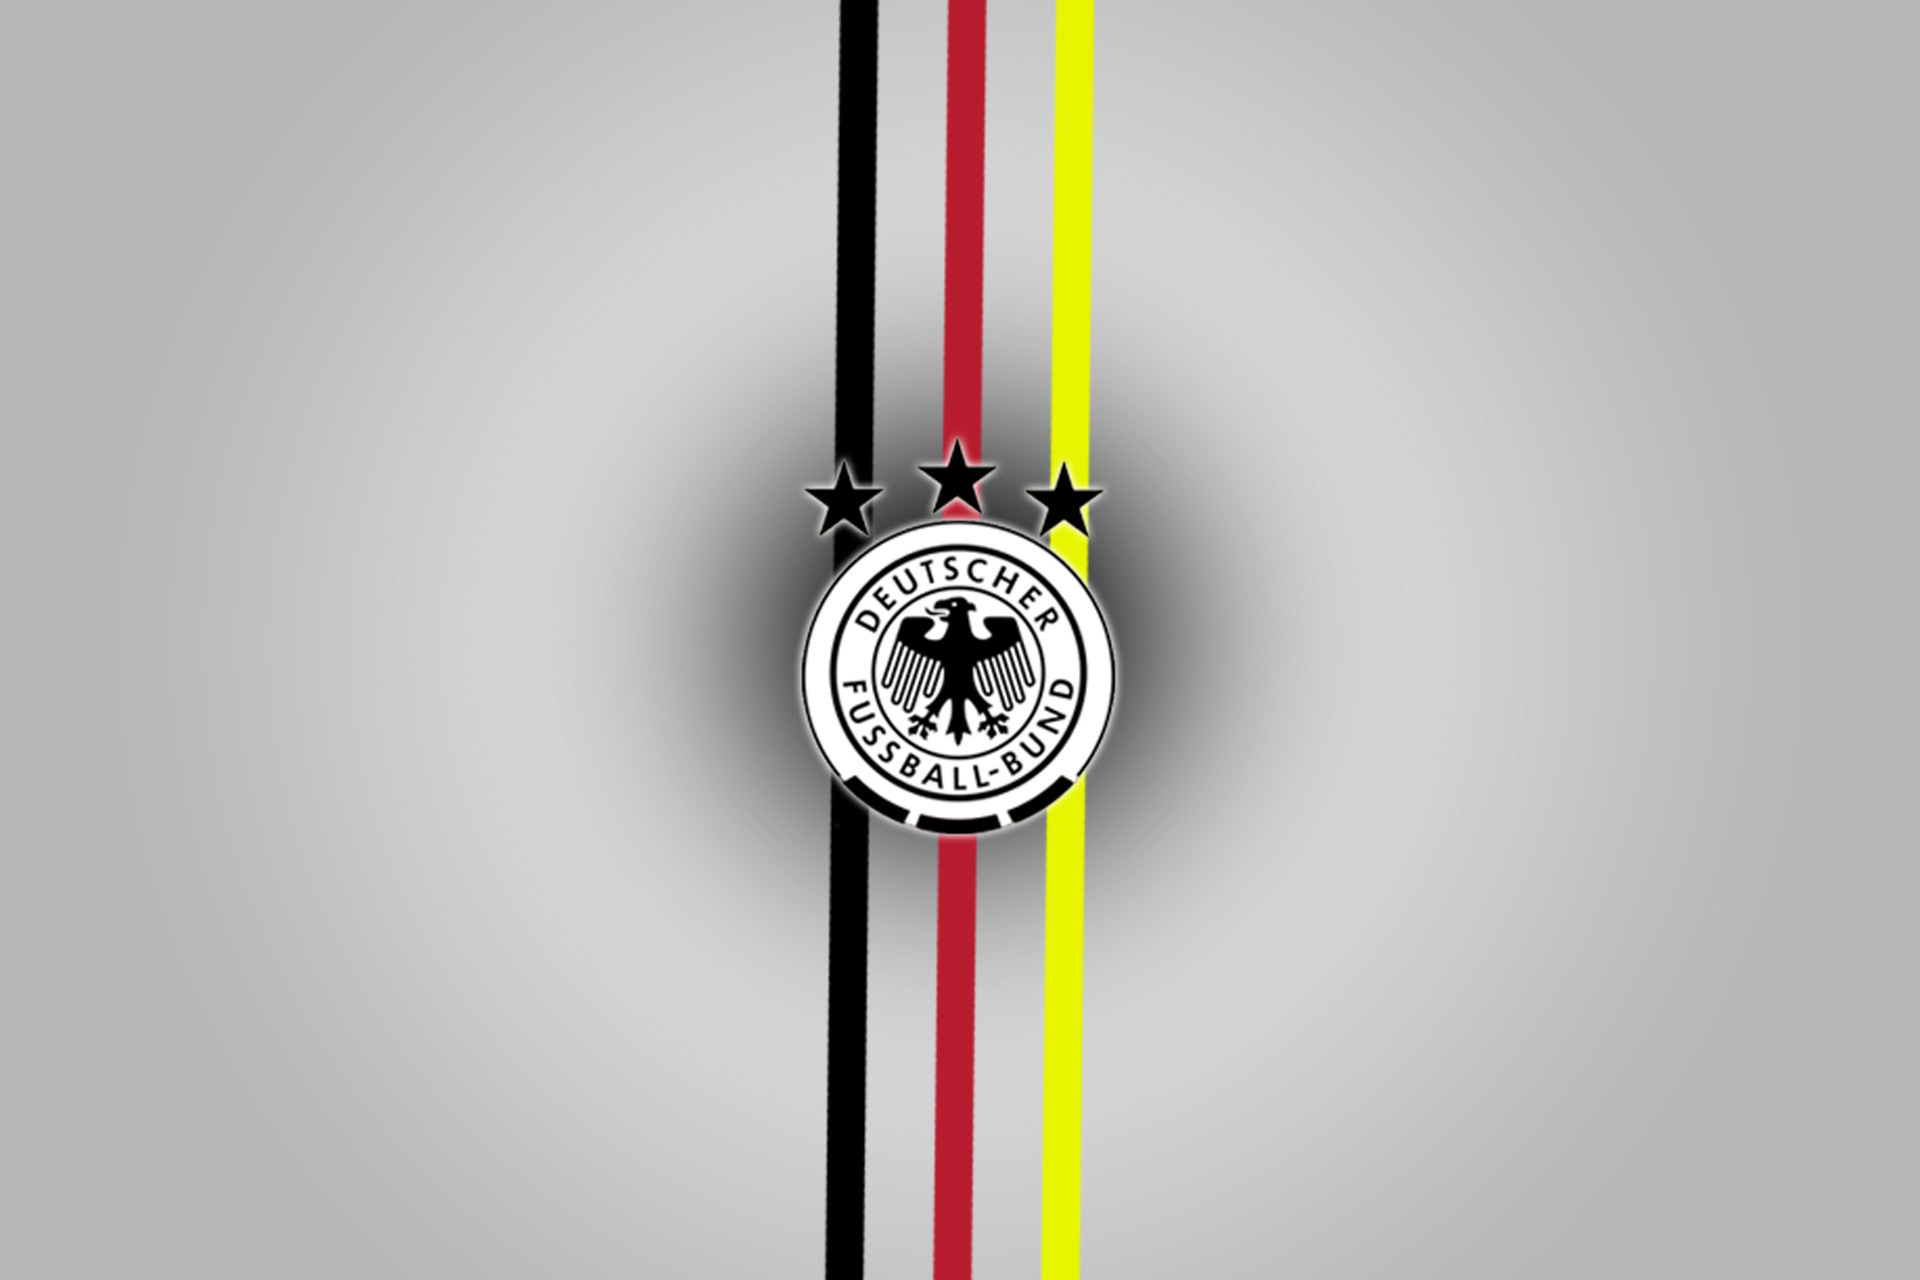 1920x1280 Deutscher FuÃball-Bund Logo Superimposed on the German Flag 720 | Football team  logos and Football team